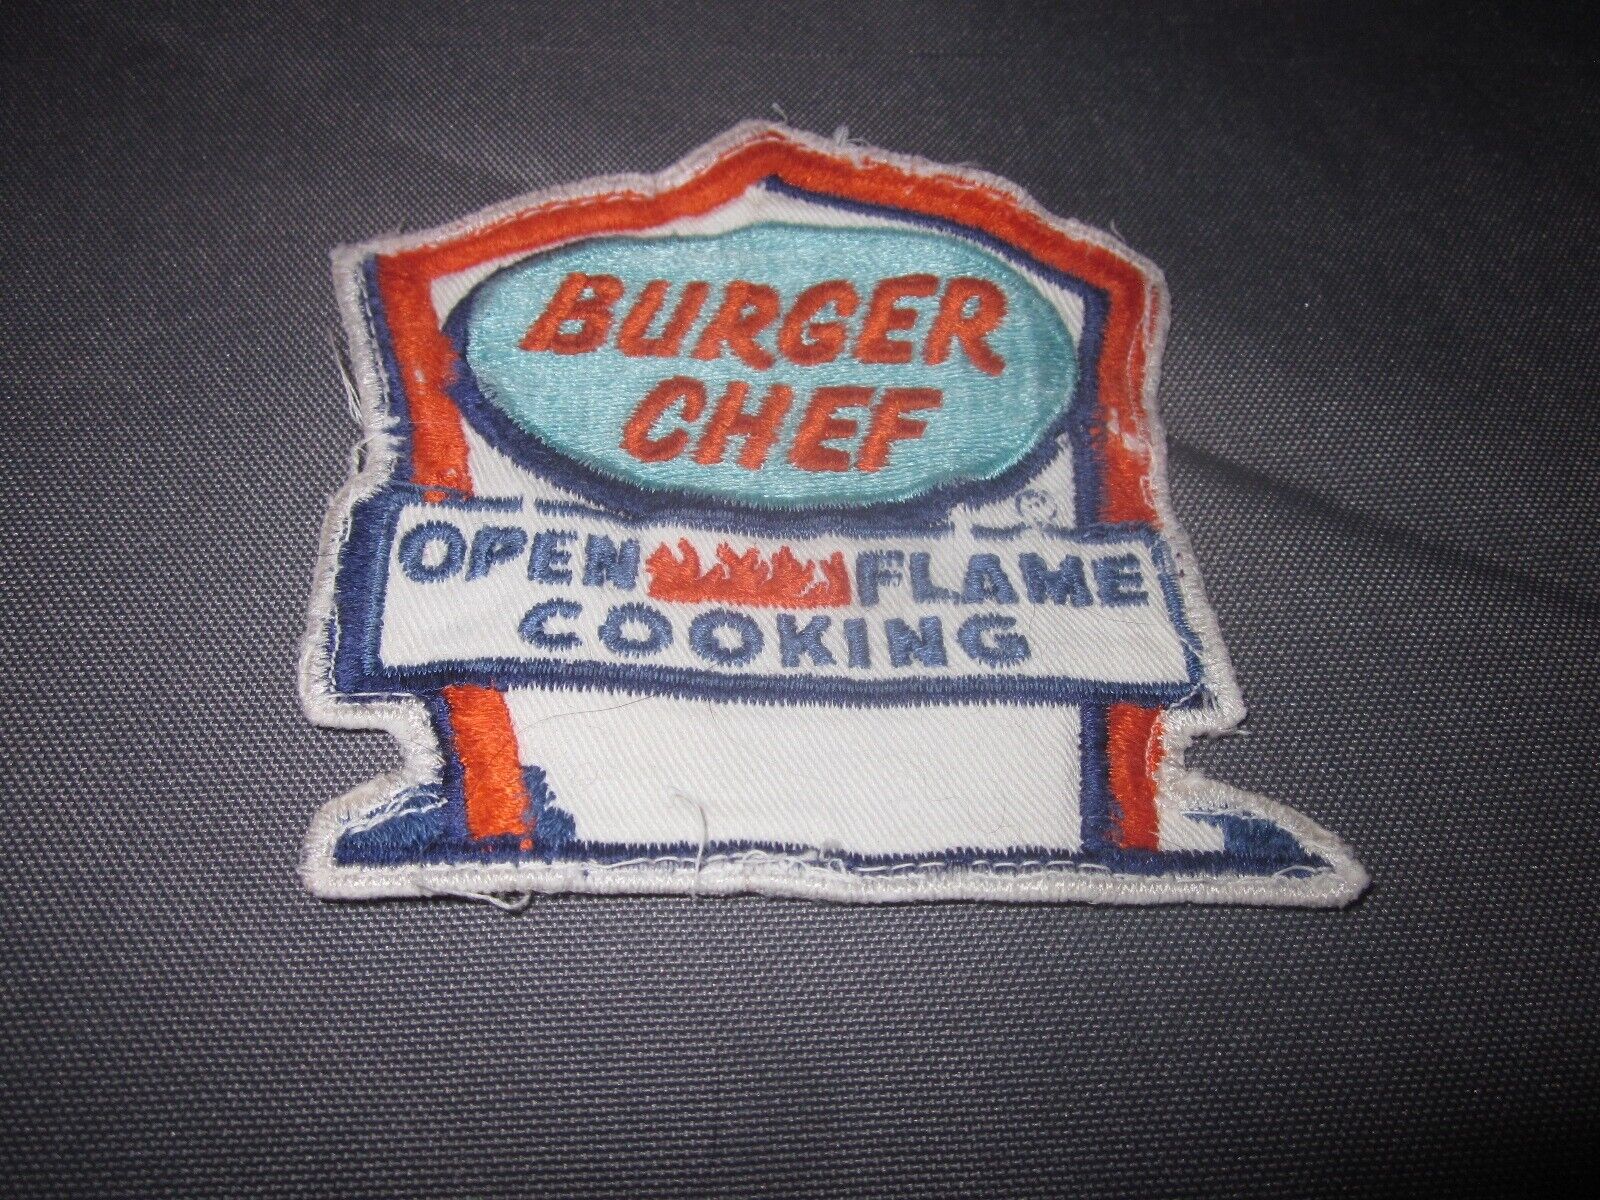 Vintage BURGER CHEF Uniform PATCH